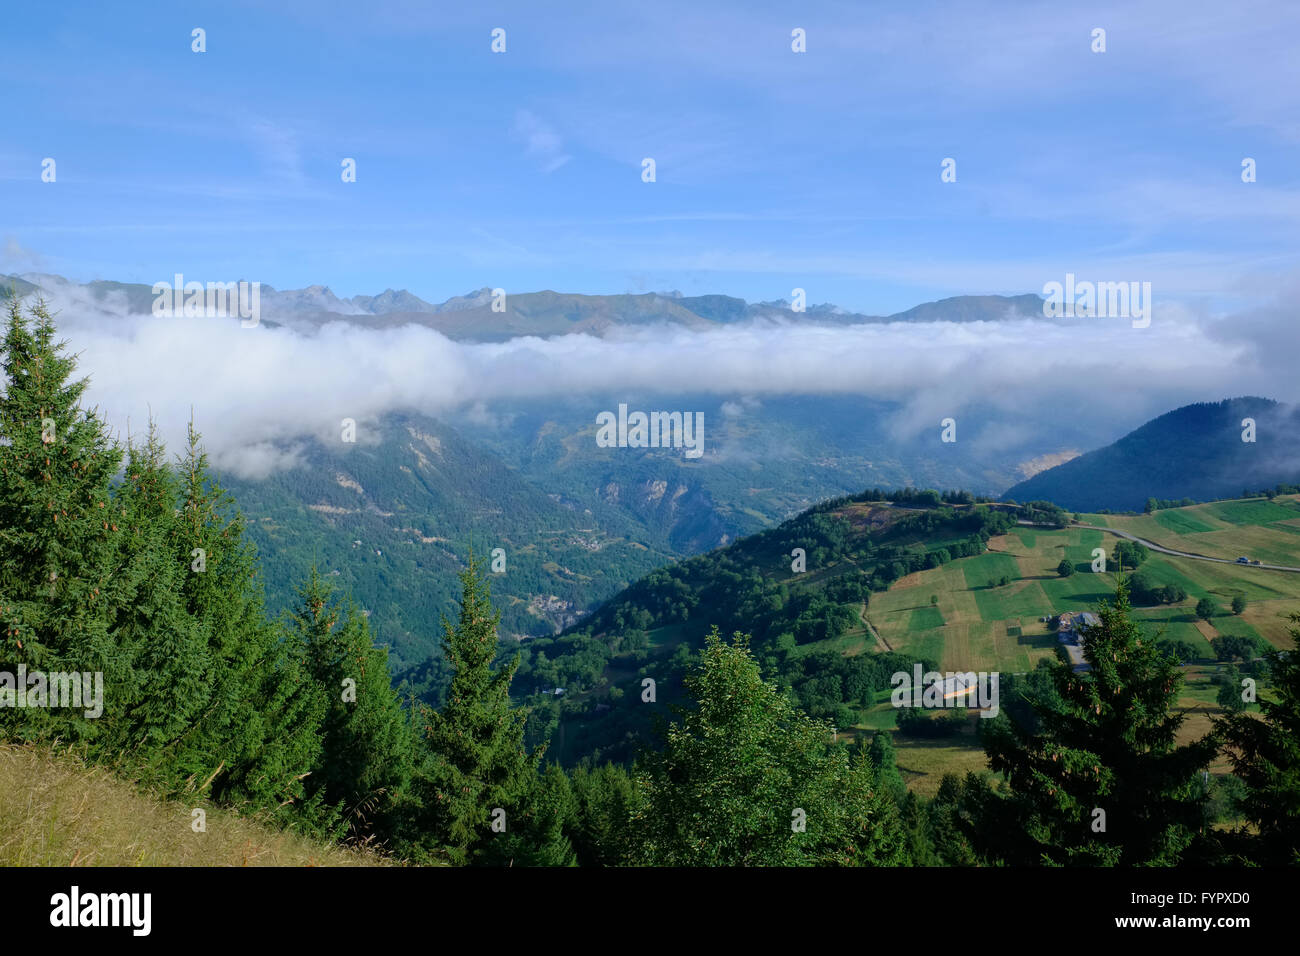 La formación de nubes horizontales flotando por encima de un valle en los Alpes franceses Foto de stock